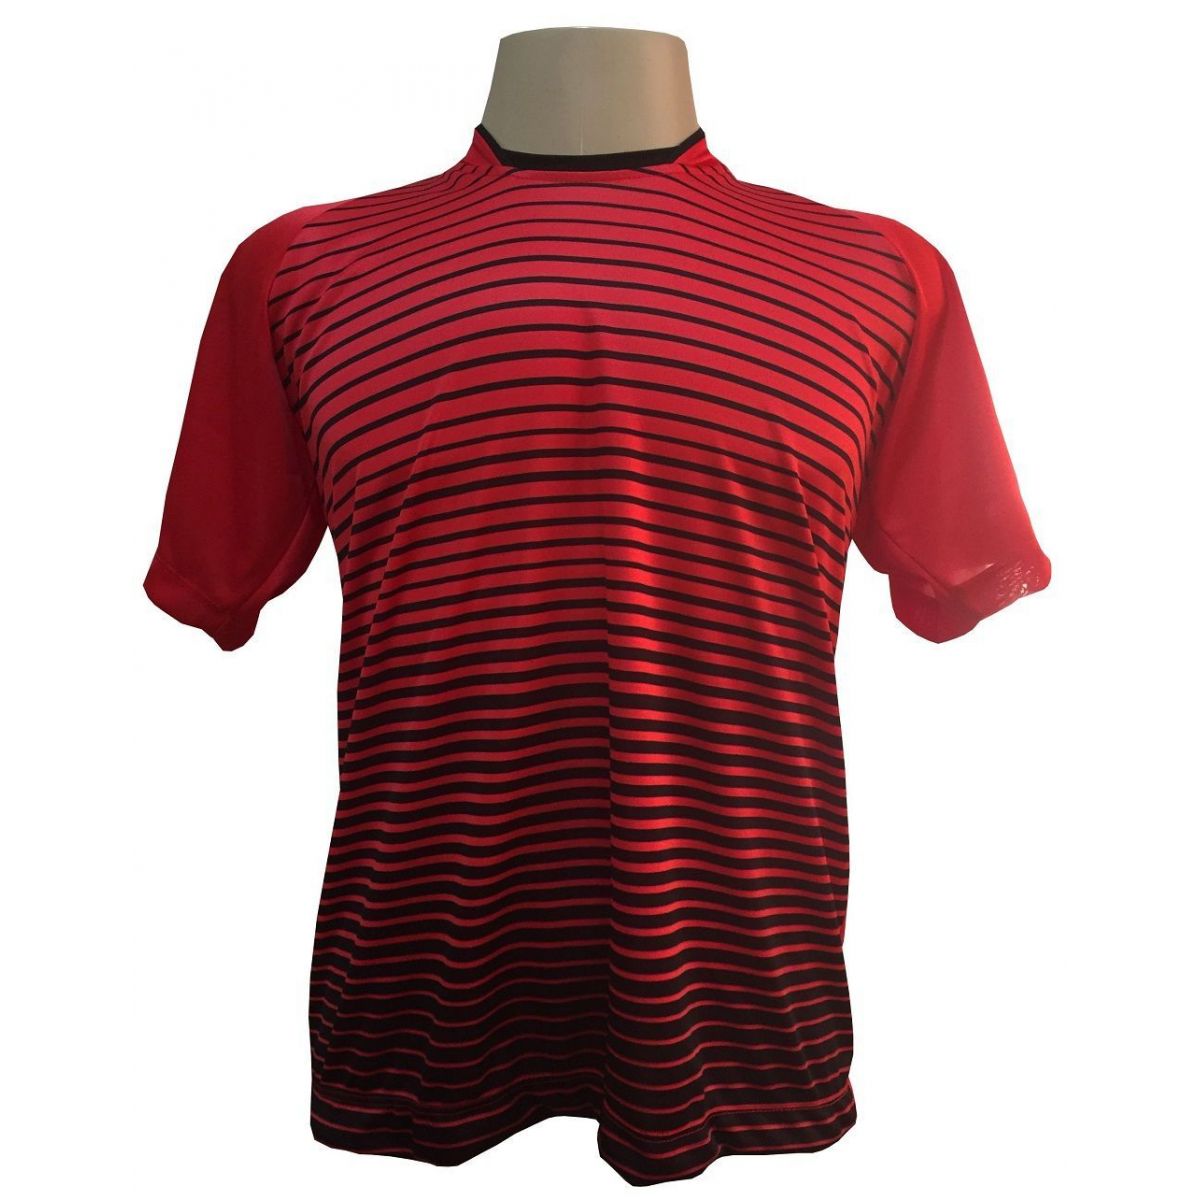 Uniforme Esportivo com 12 camisas modelo City Vermelho/Preto + 12 calções modelo Madrid Vermelho + Brindes